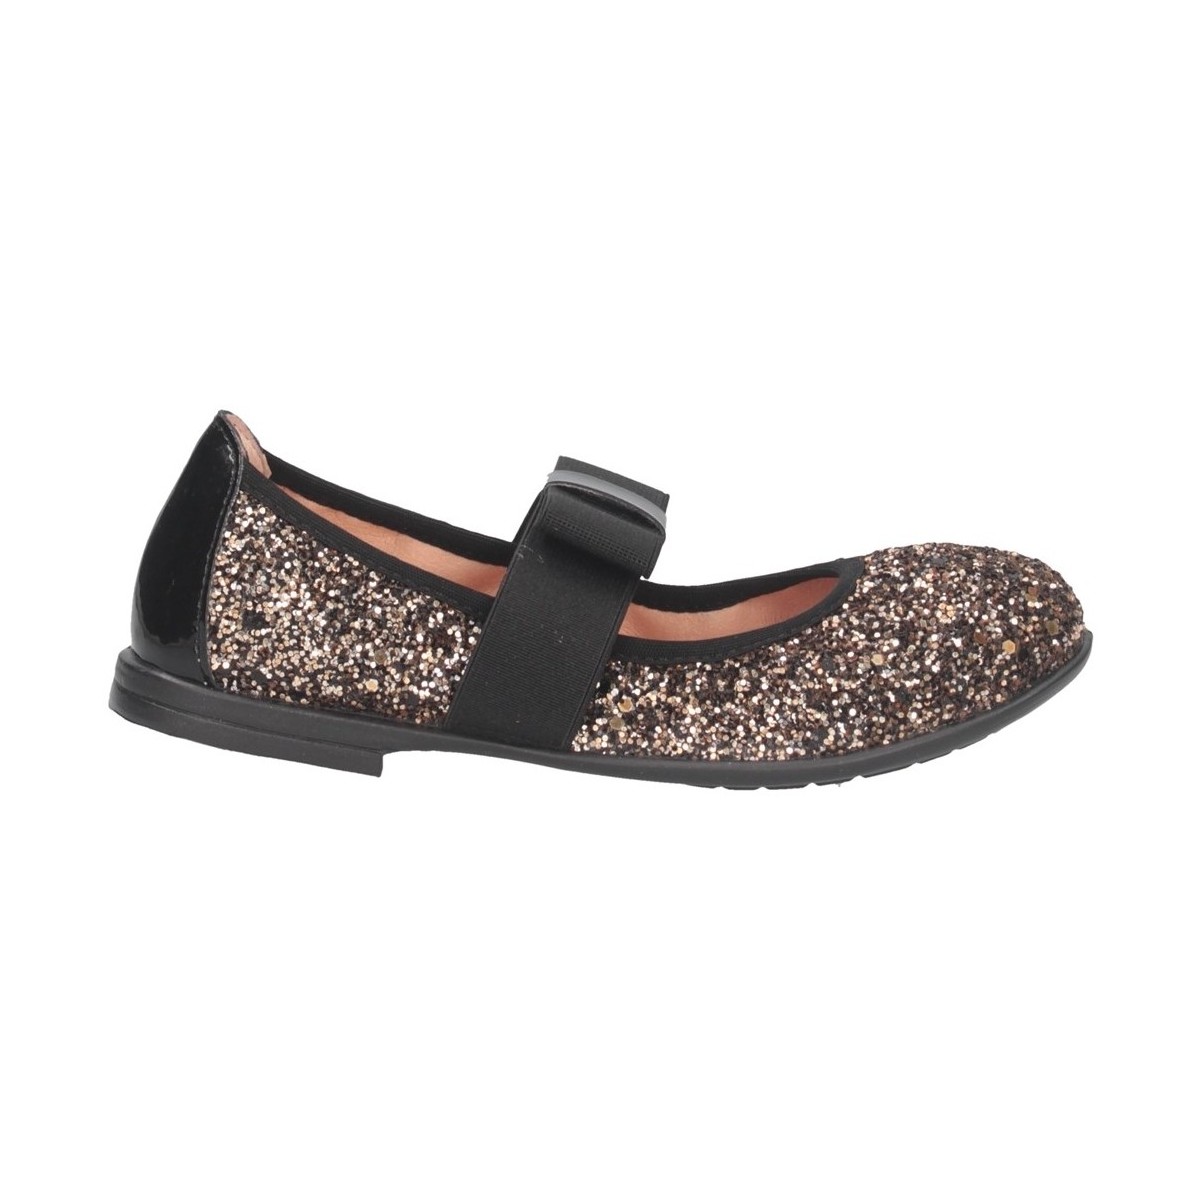 Chaussures Fille Votre article a été ajouté aux préférés SAMA GL ACROPOLIS Ballerines Enfant bronze Multicolore